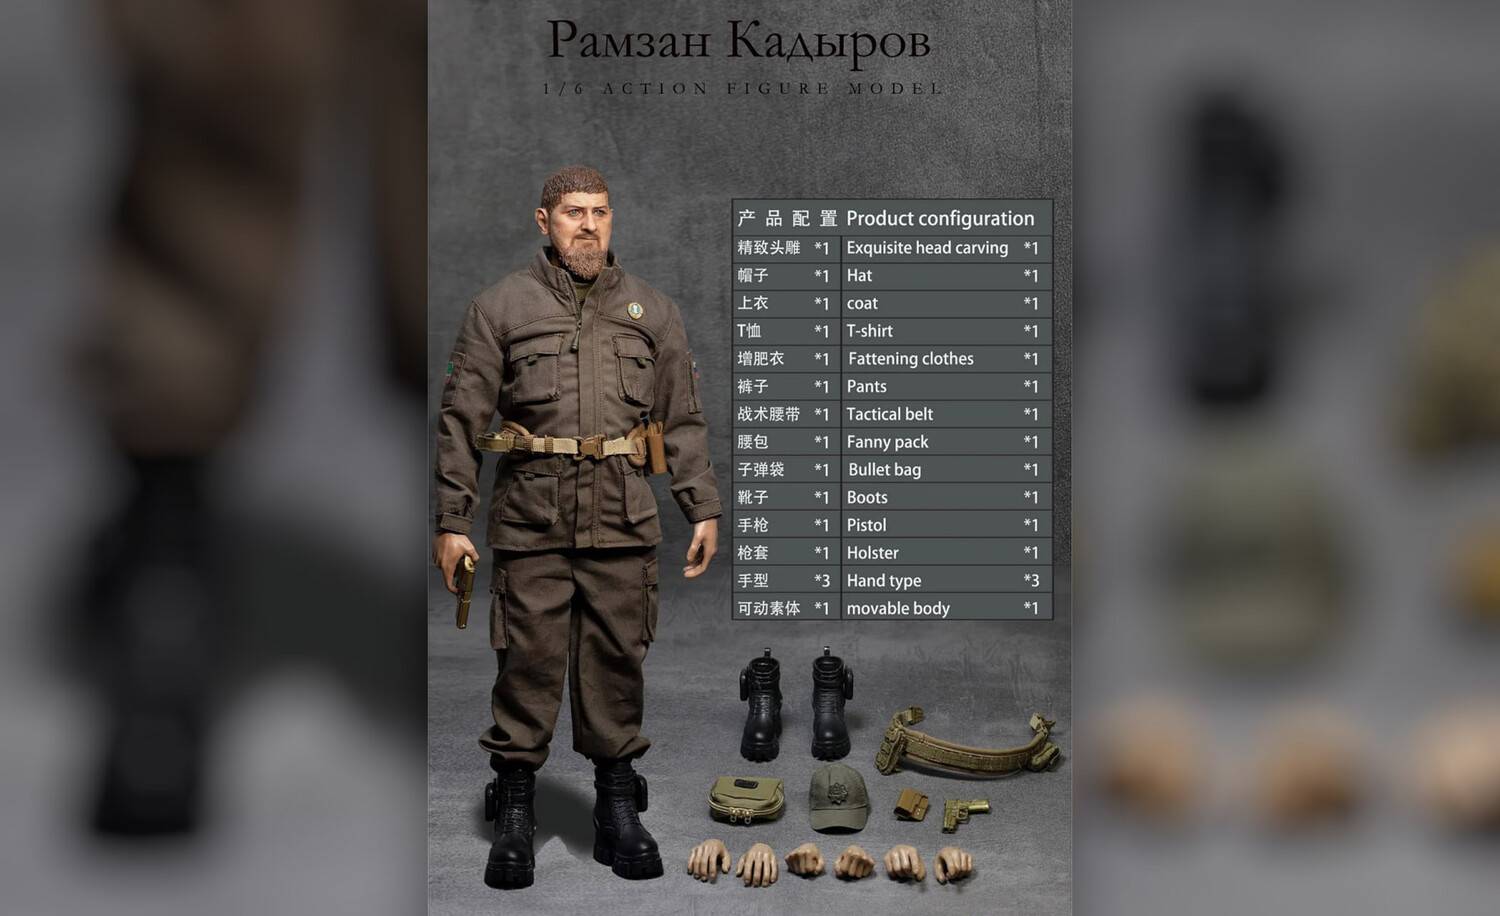 В Китае представили фигурку Кадырова с тремя сменными парами рук и золотым пистолетом